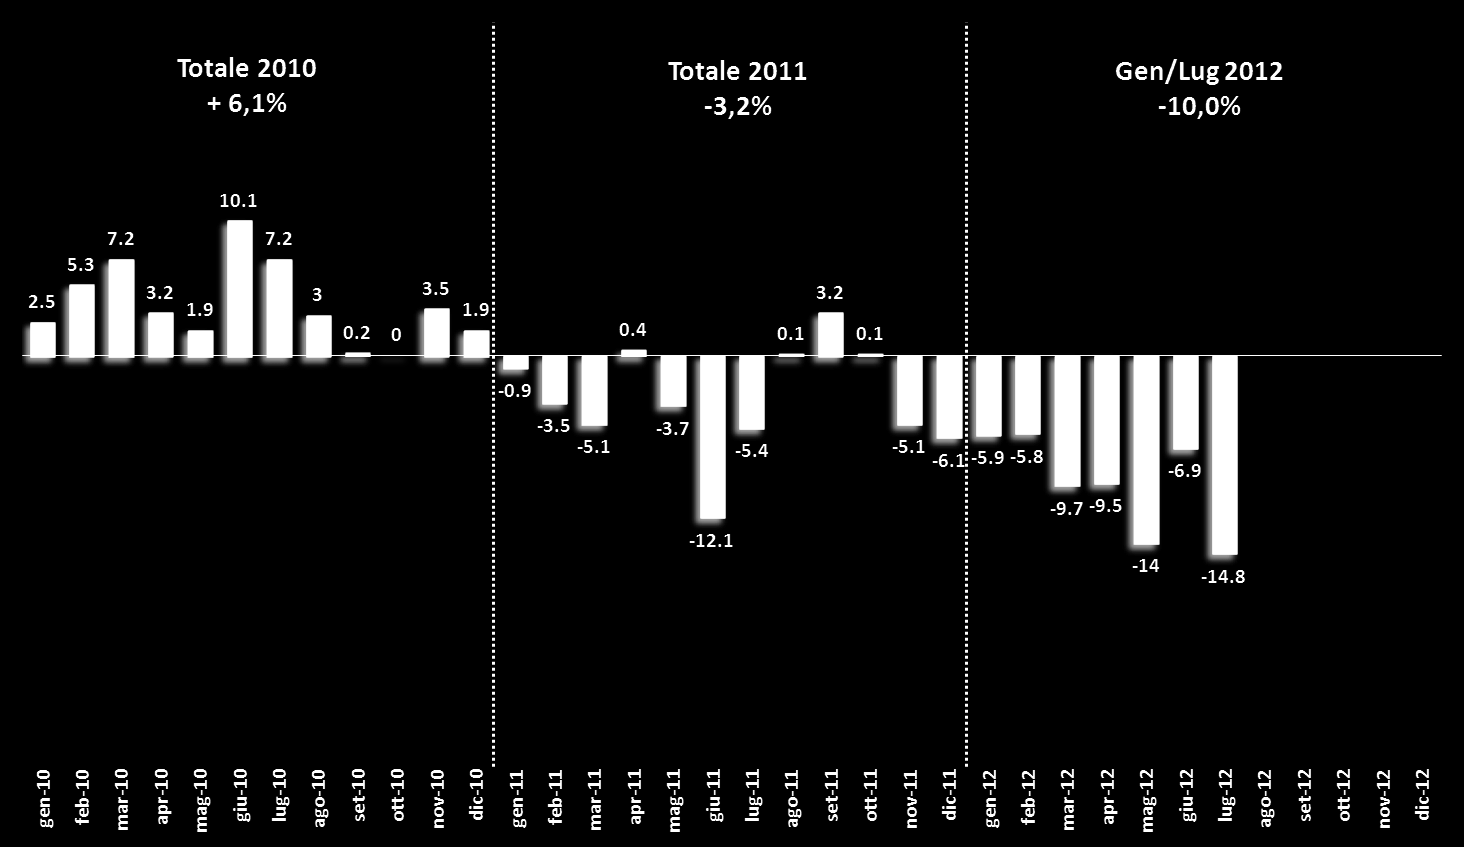 ... In luglio 2012 torna a peggiorare l andamento del mercato e il gen/lug vede un decremento del -10,0%